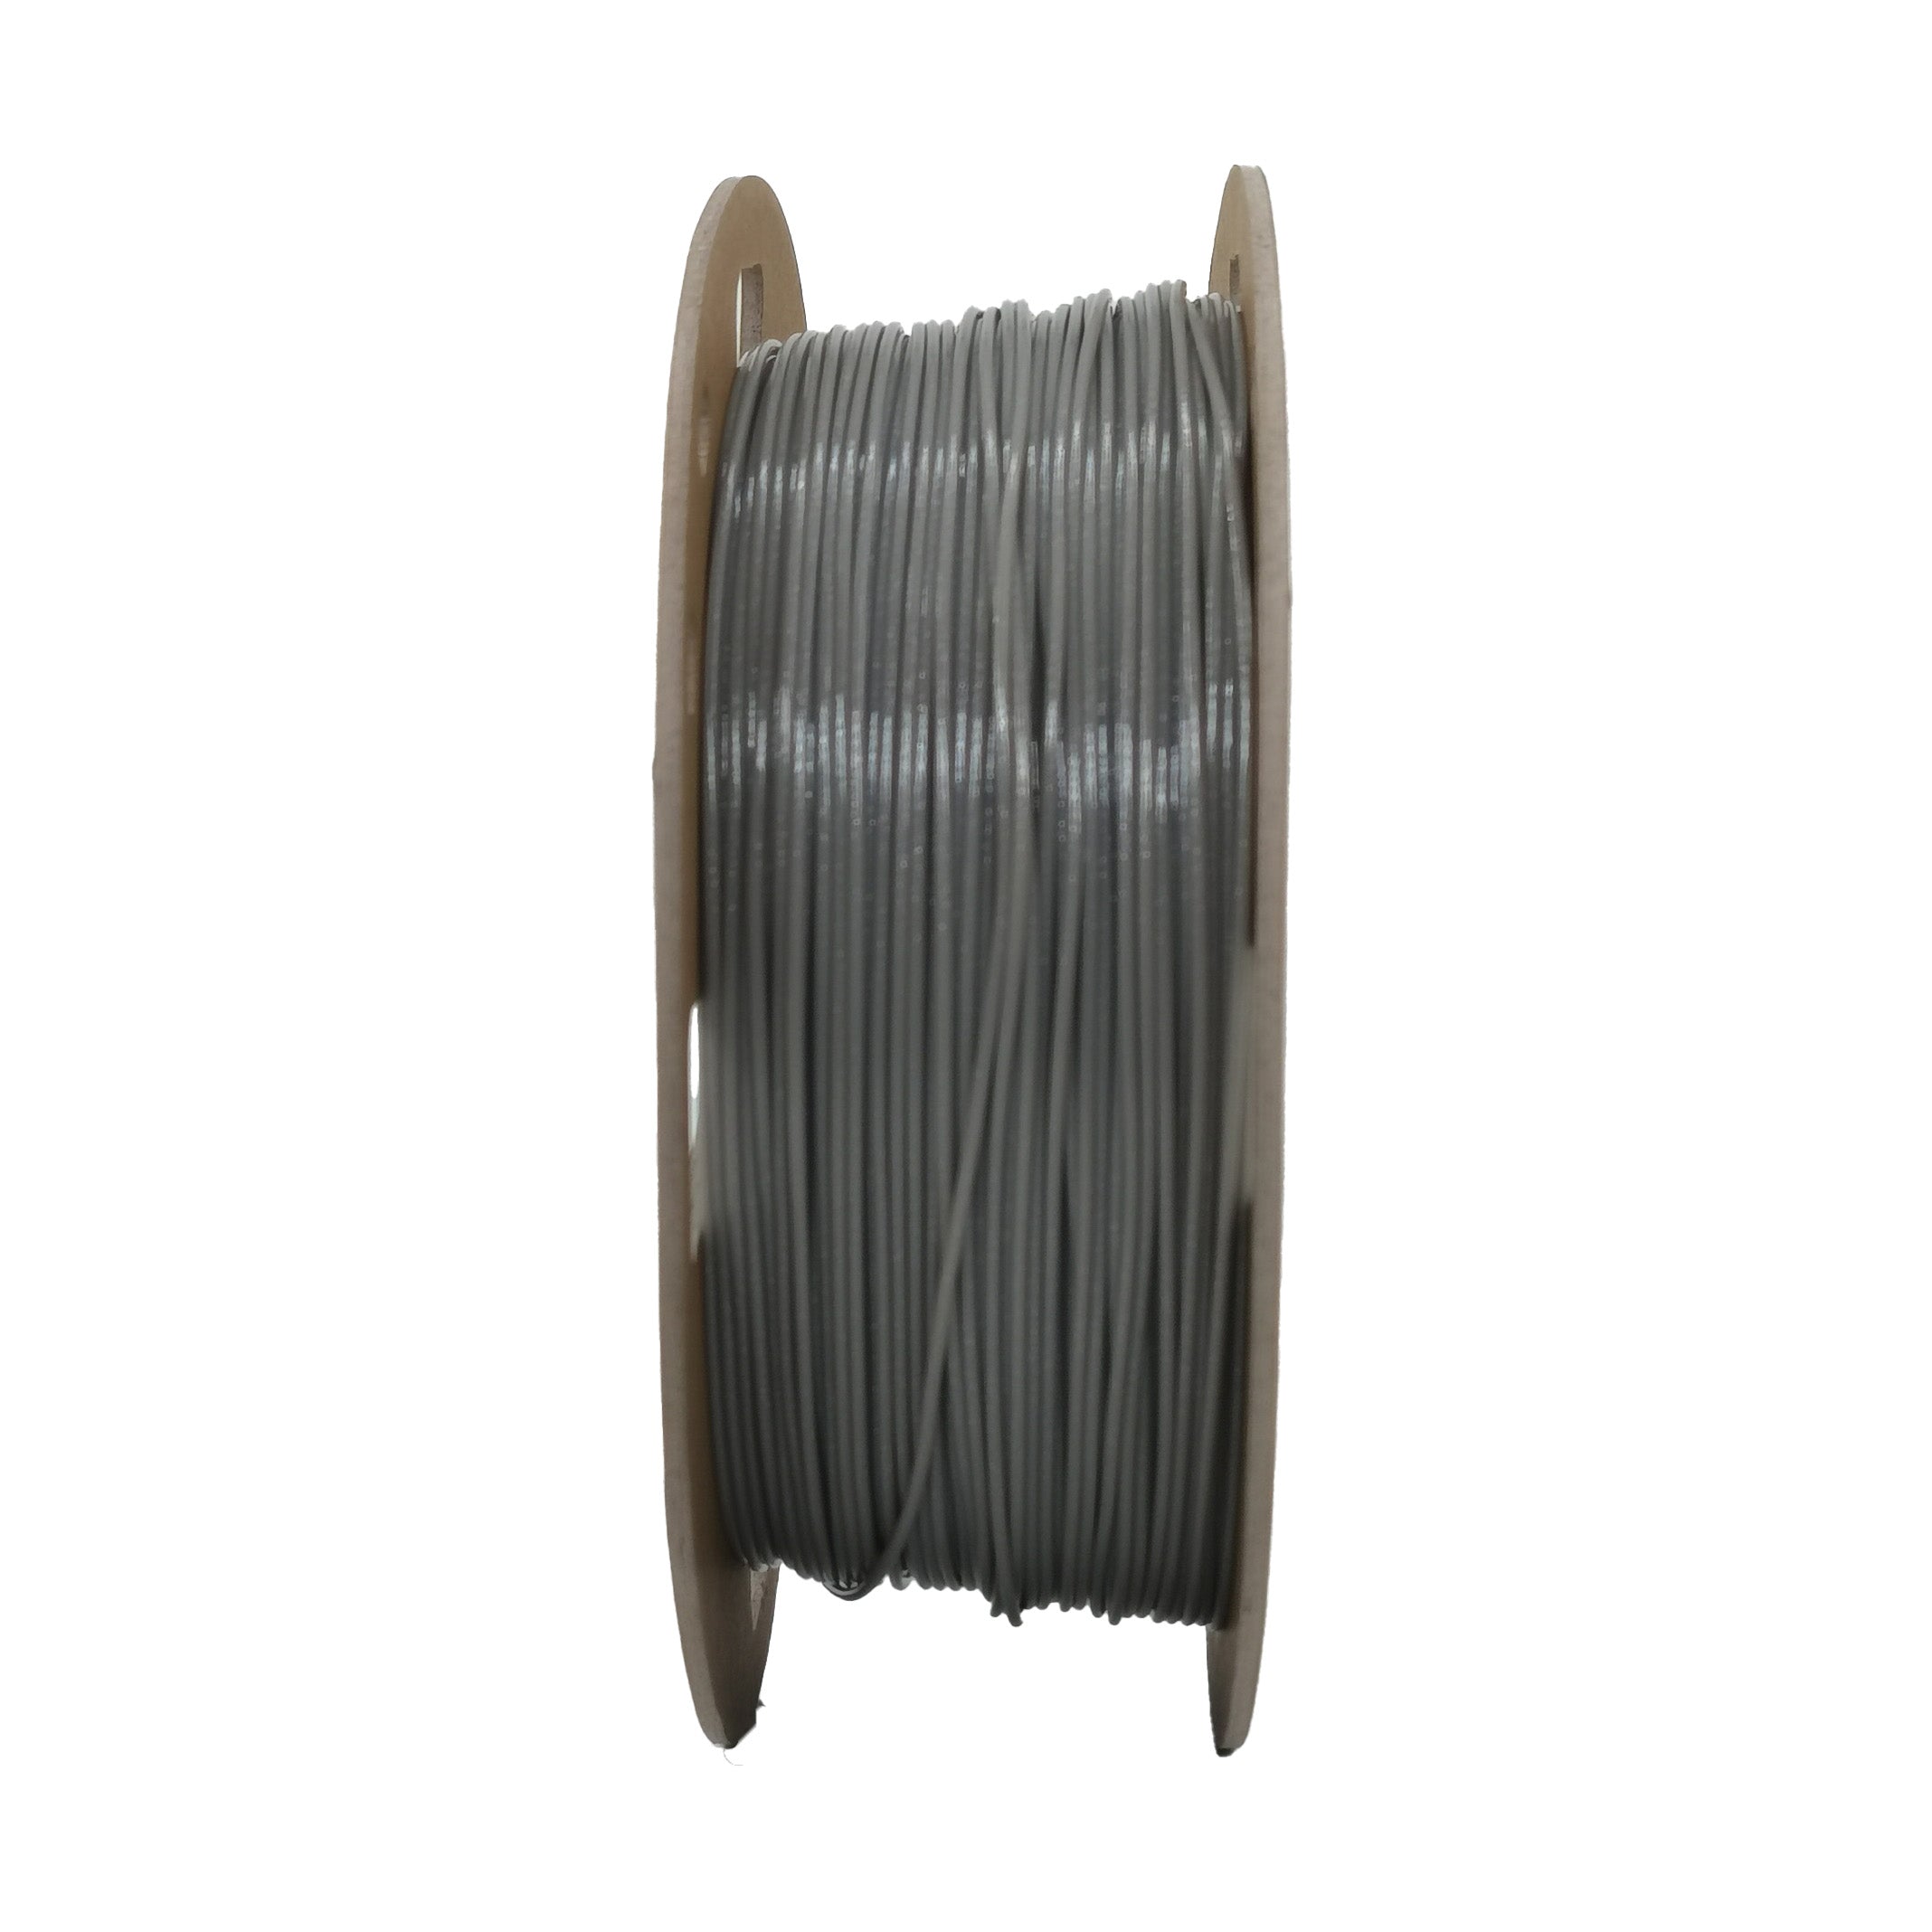 DREMC Sparkle PETG Filament 1.75mm 1kg